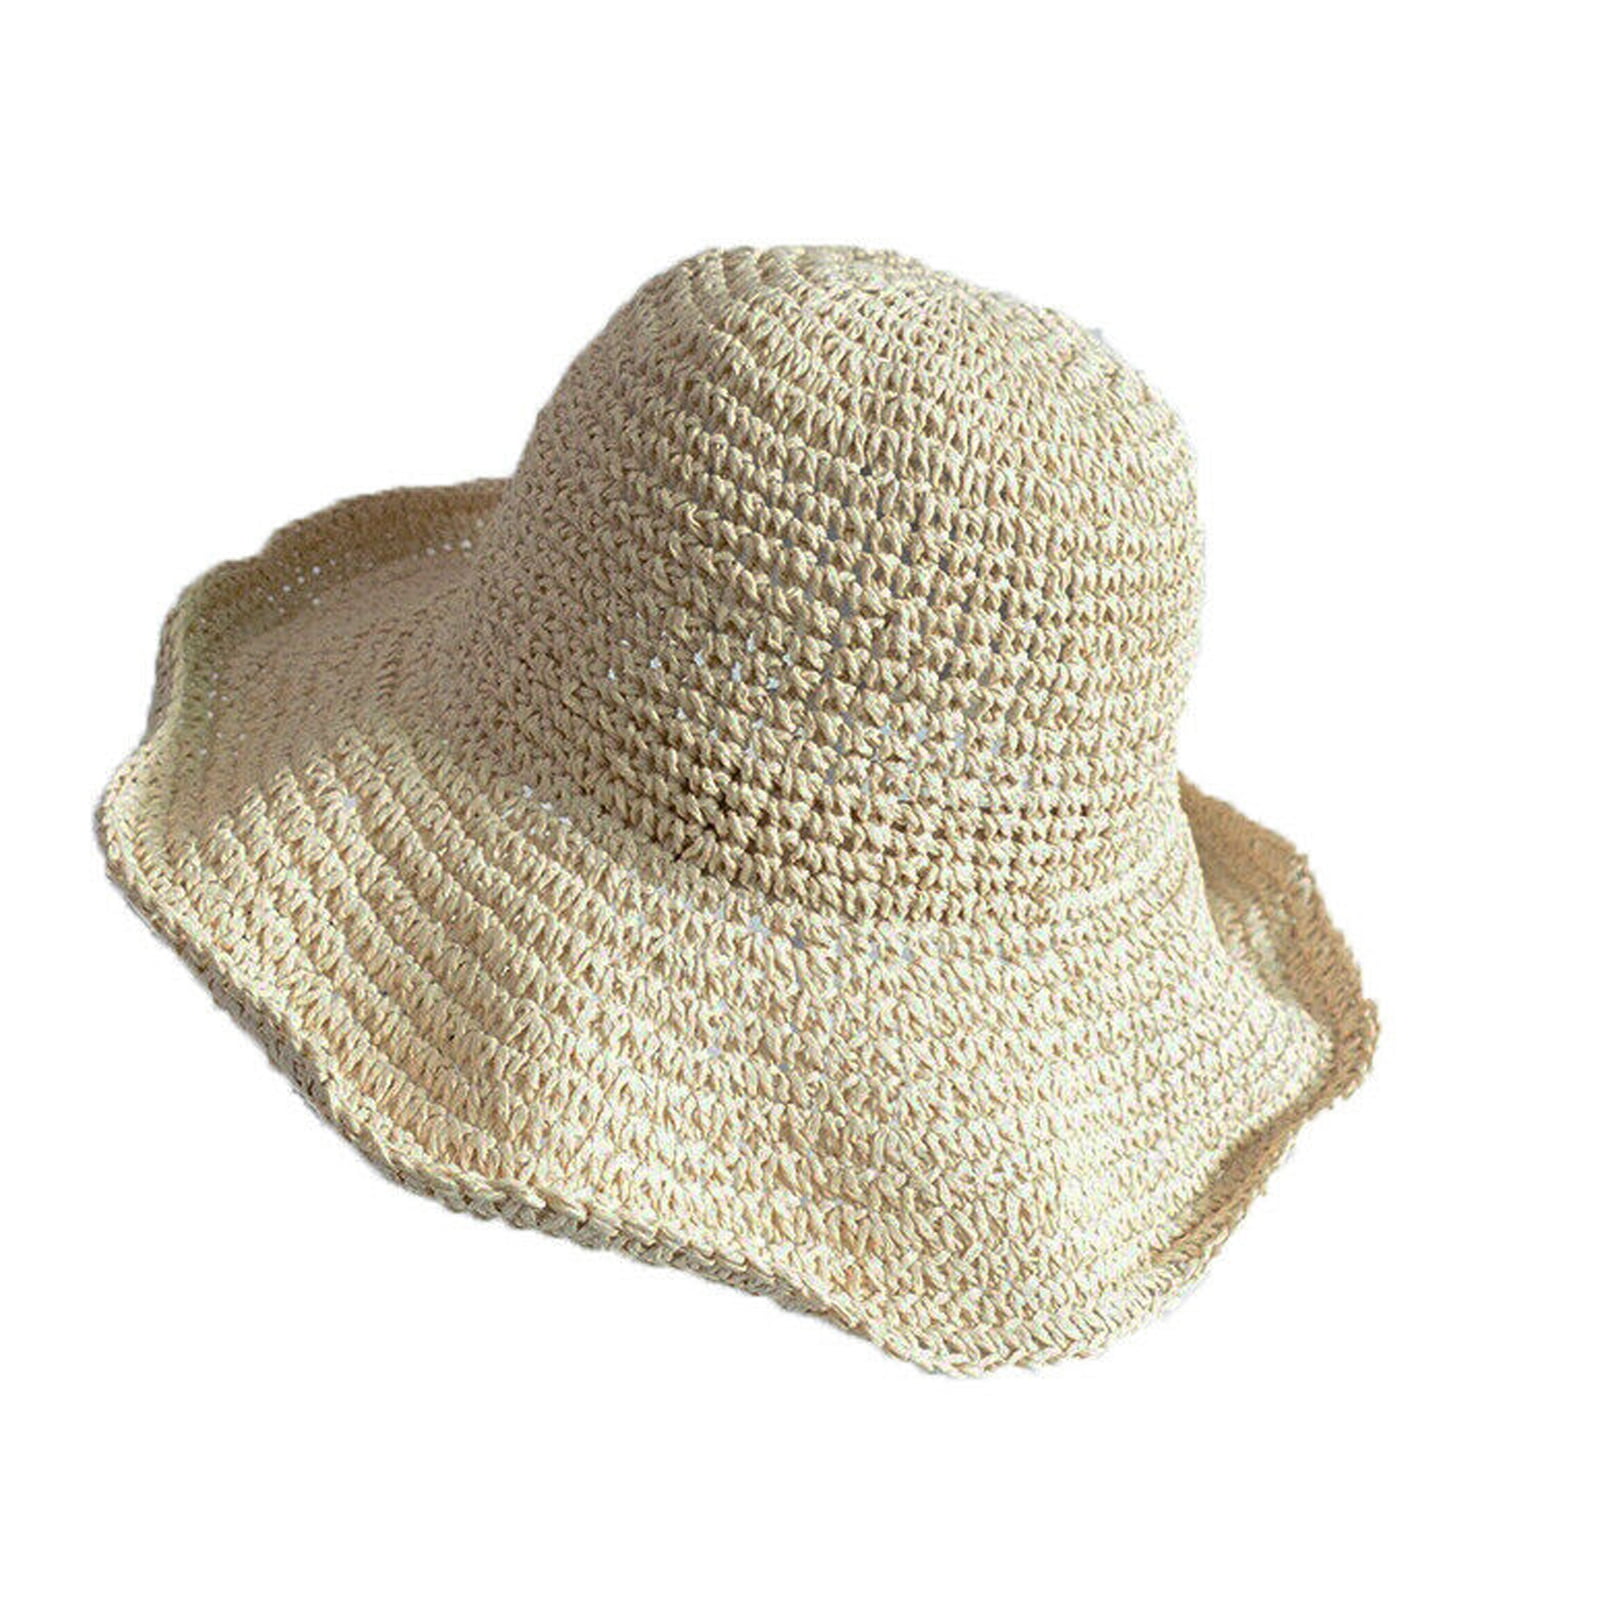 Handmade Embroidered Sun Hat Women Summer Straw Hat Beach Hat Cloche Hat UPF50+